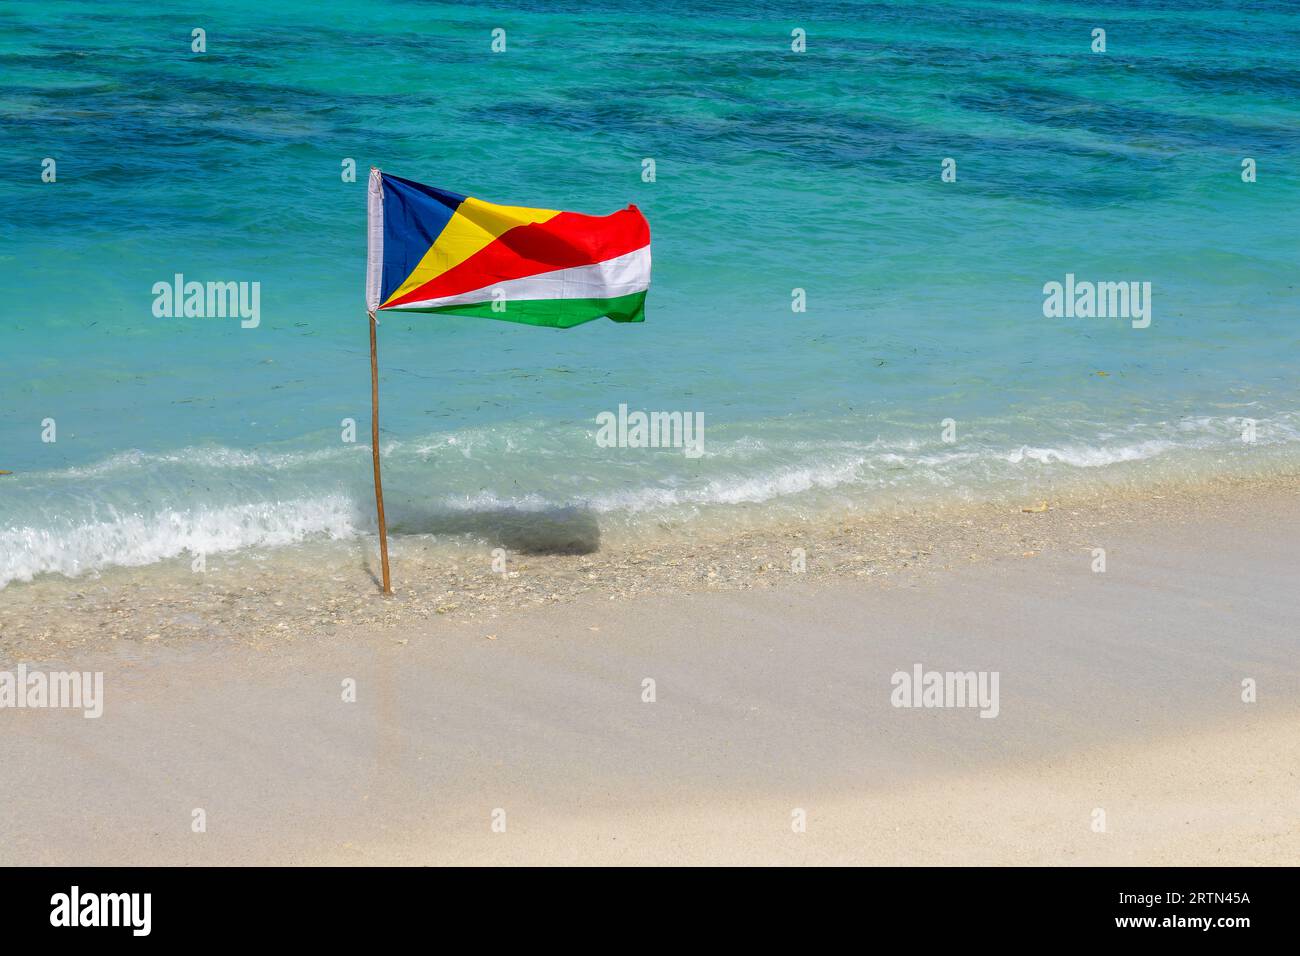 Bandiera delle Seychelles, spiaggia di sabbia bianca e fondo d'acqua turchese con spazio per le copie Foto Stock